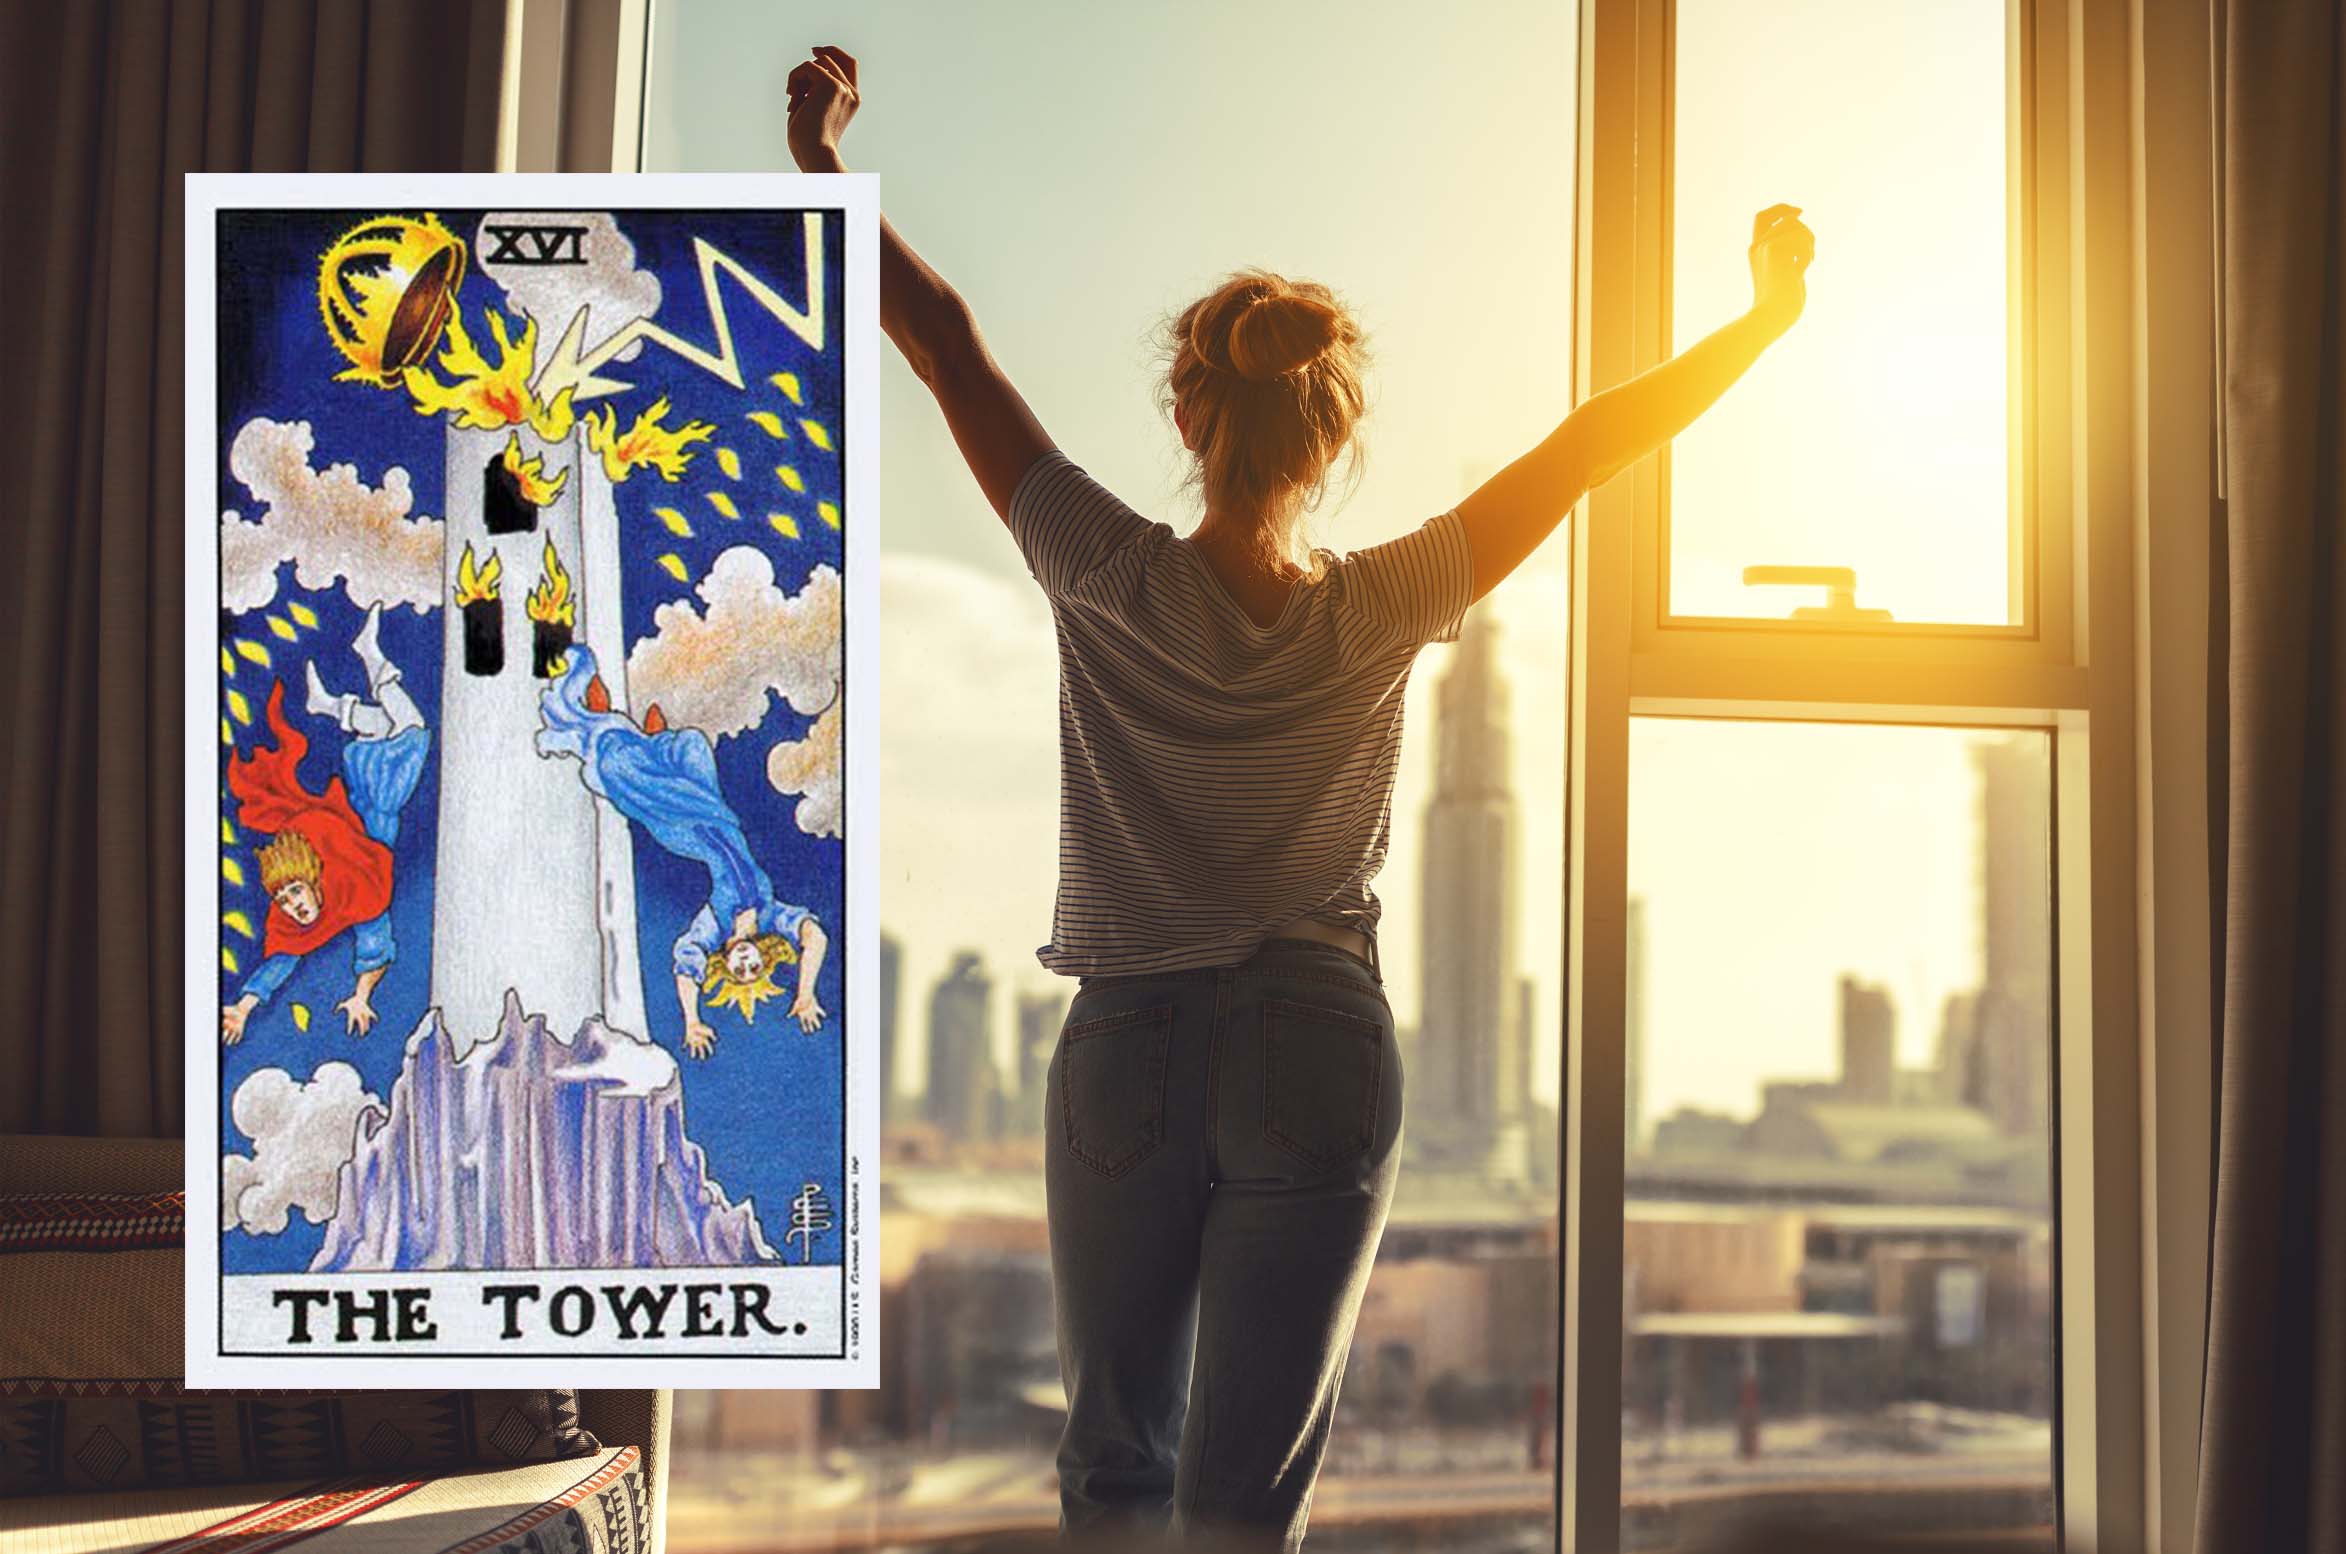 Башня Таро – 16 аркан: значение в отношениях, любви, работе и в сочетании с другими картами при гадании